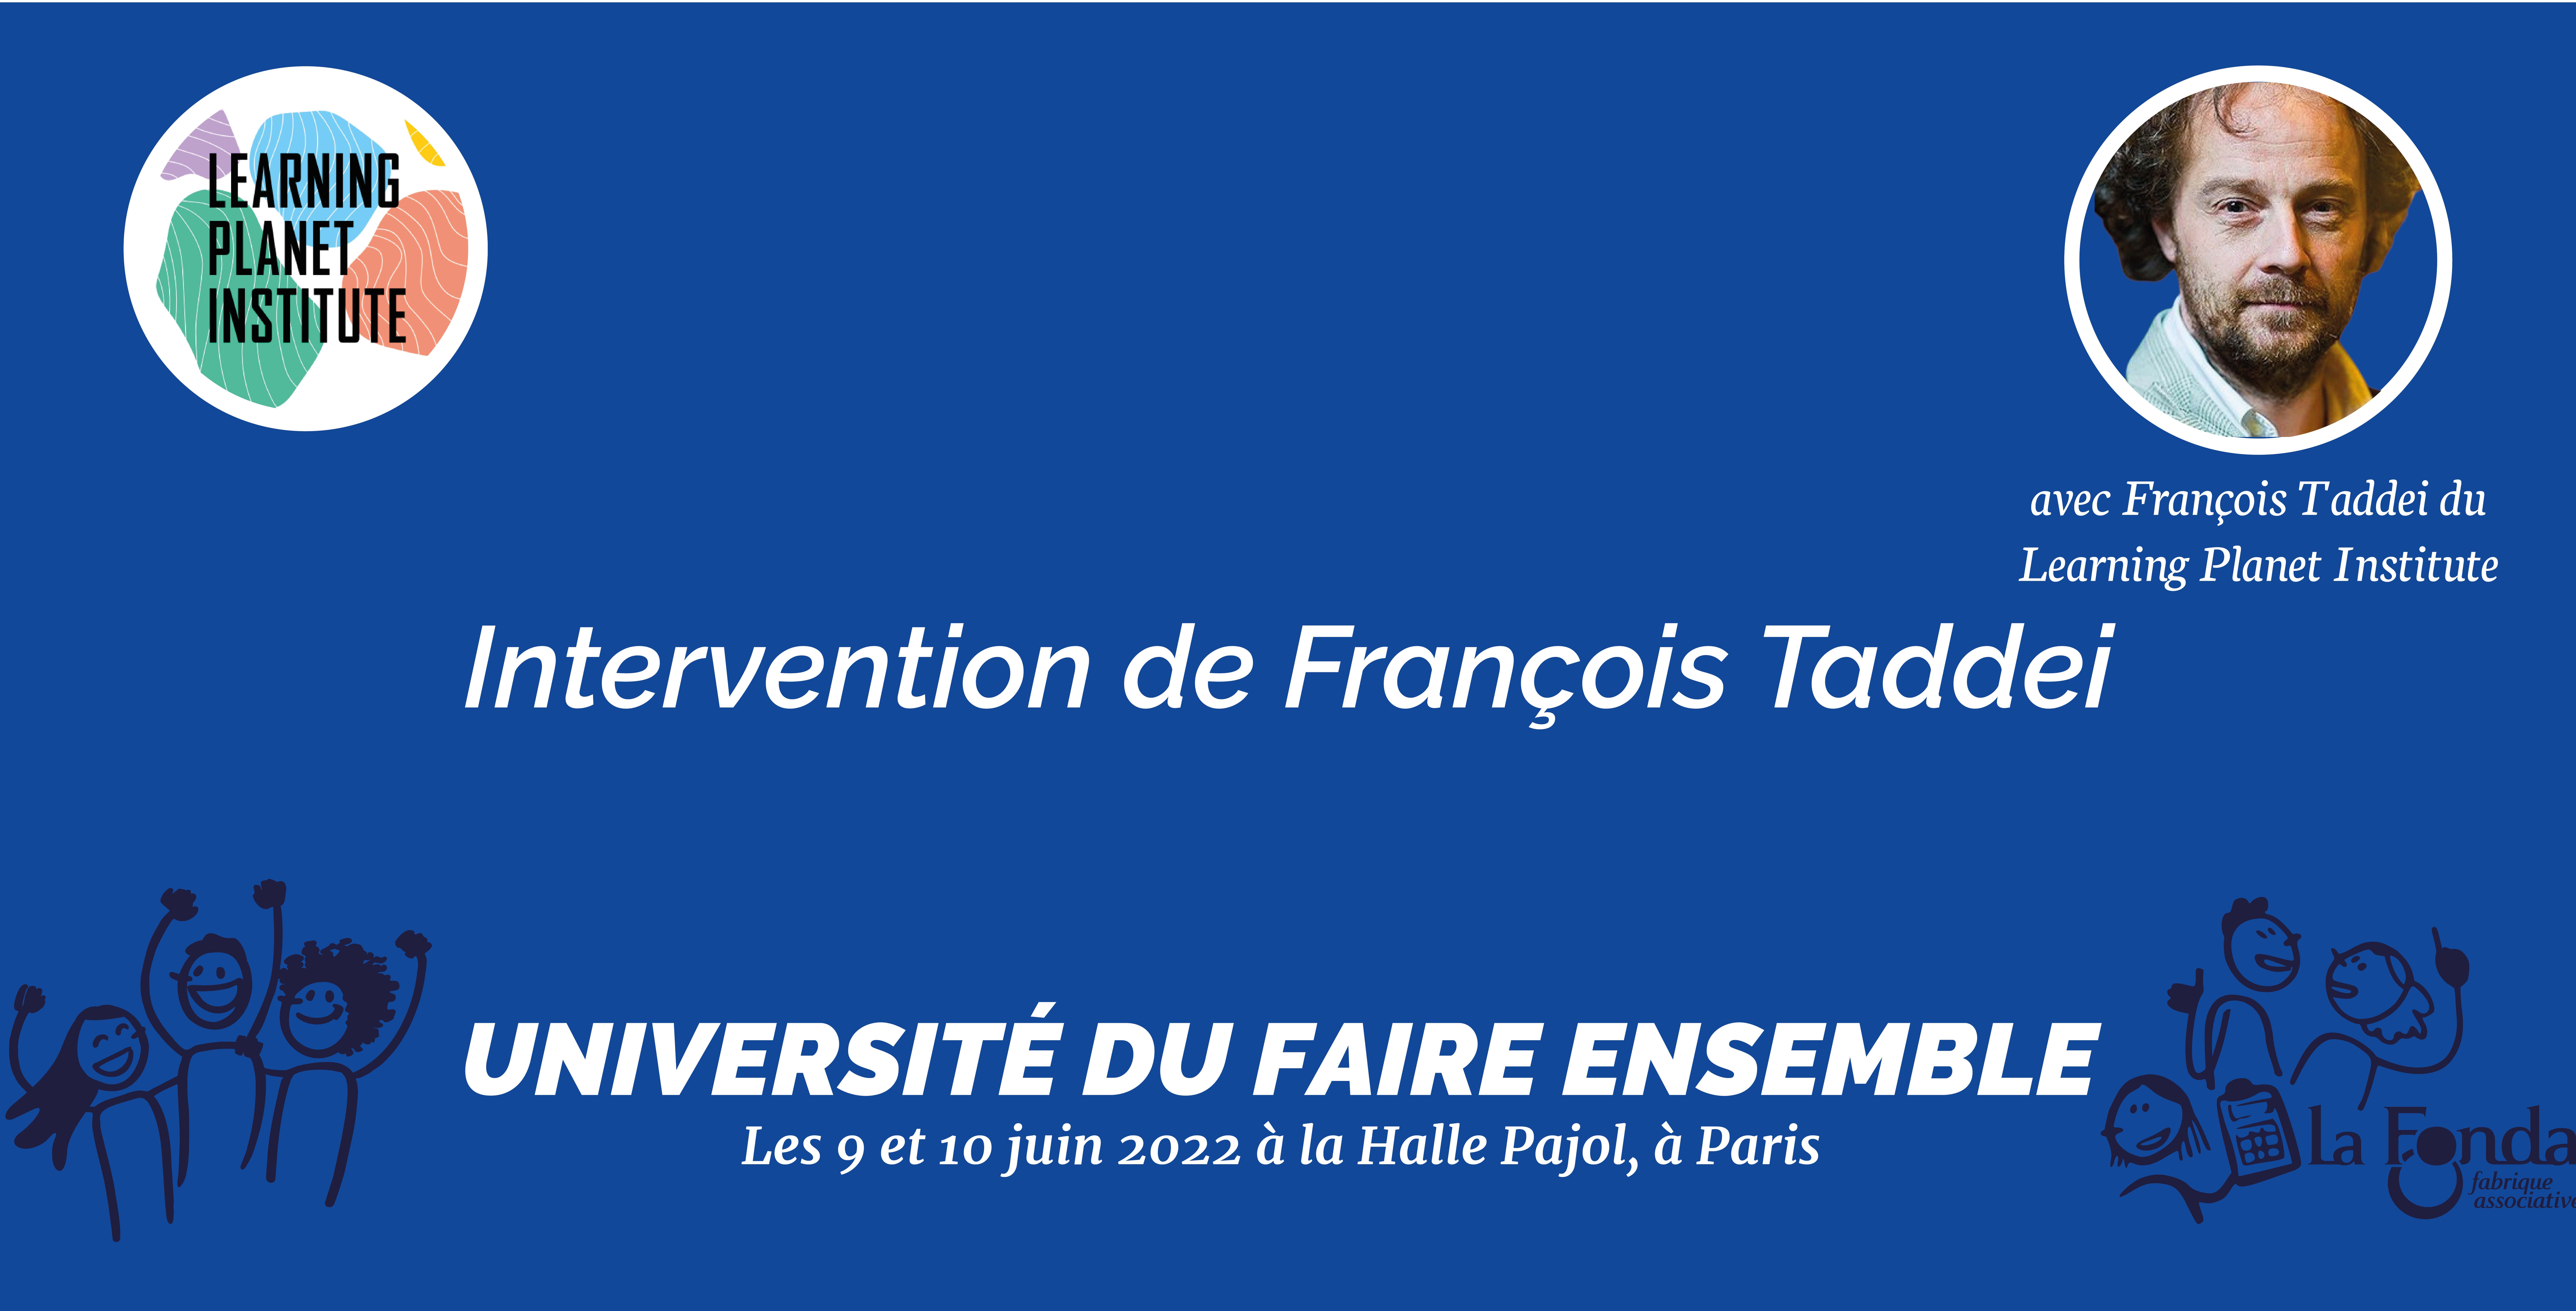 Intervention de François Taddei pour l'Université du Faire ensemble © Agathe Thiebeaux - La Fonda